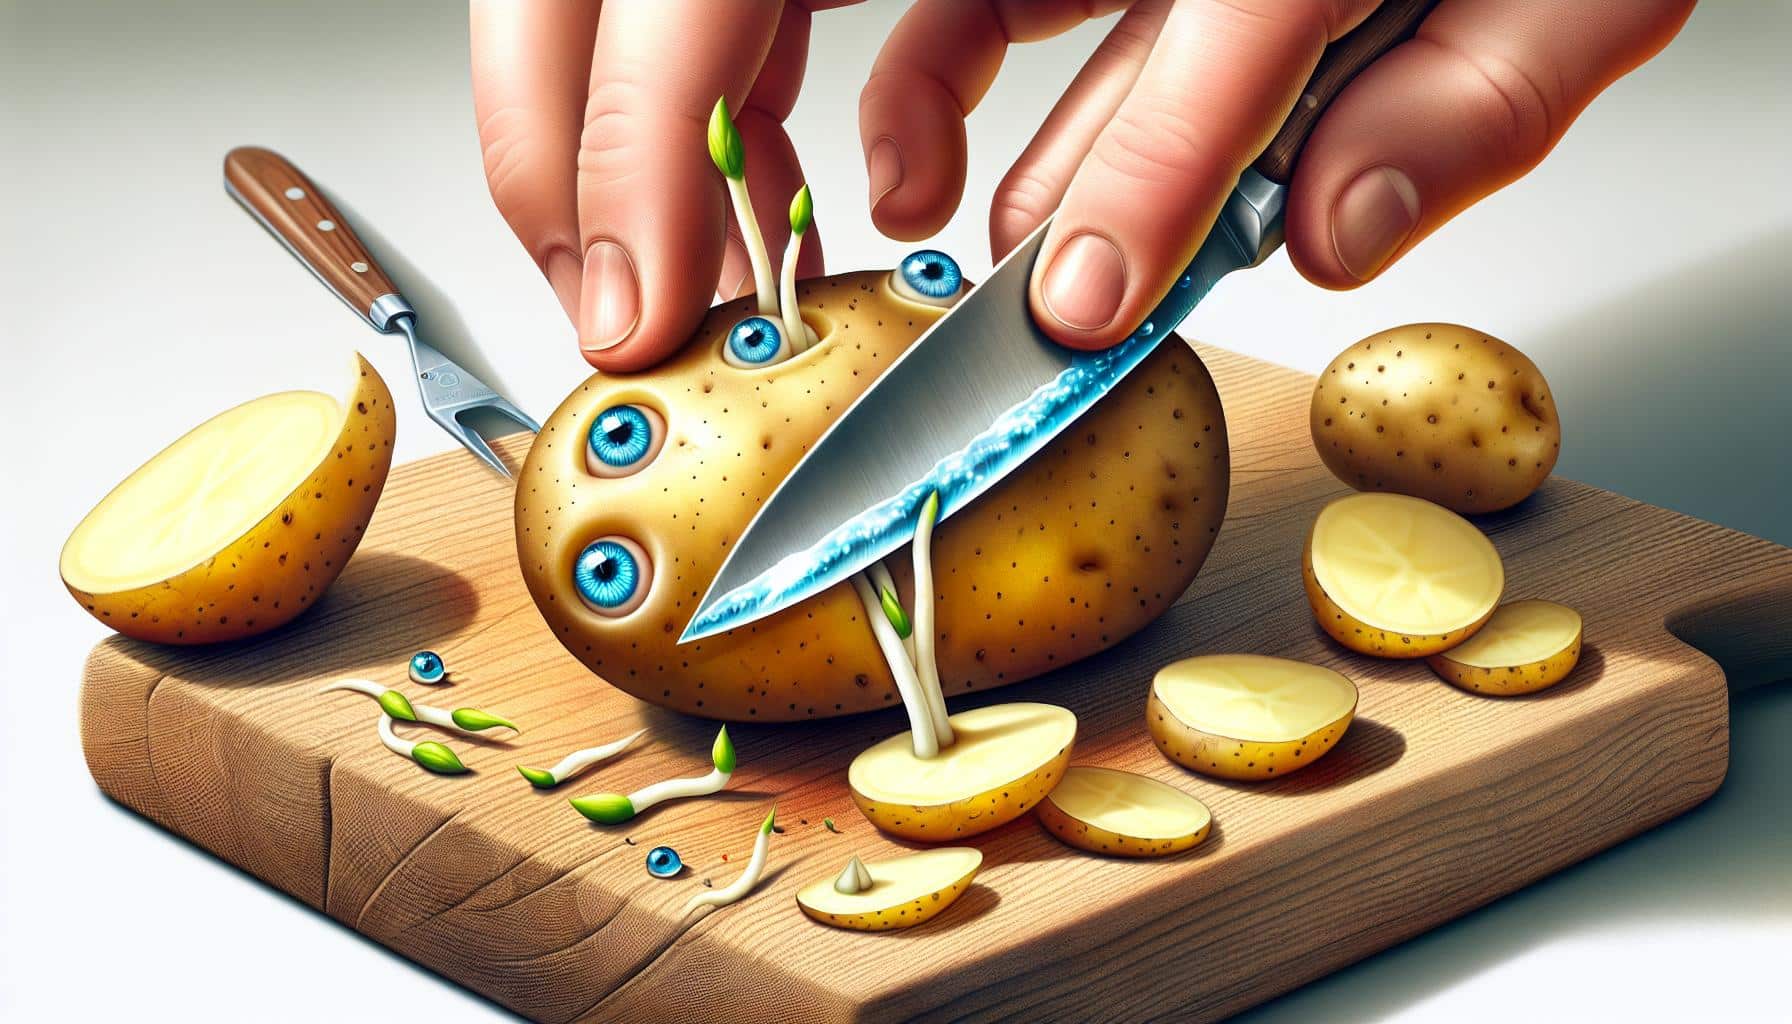 animated potato being peeled illustration